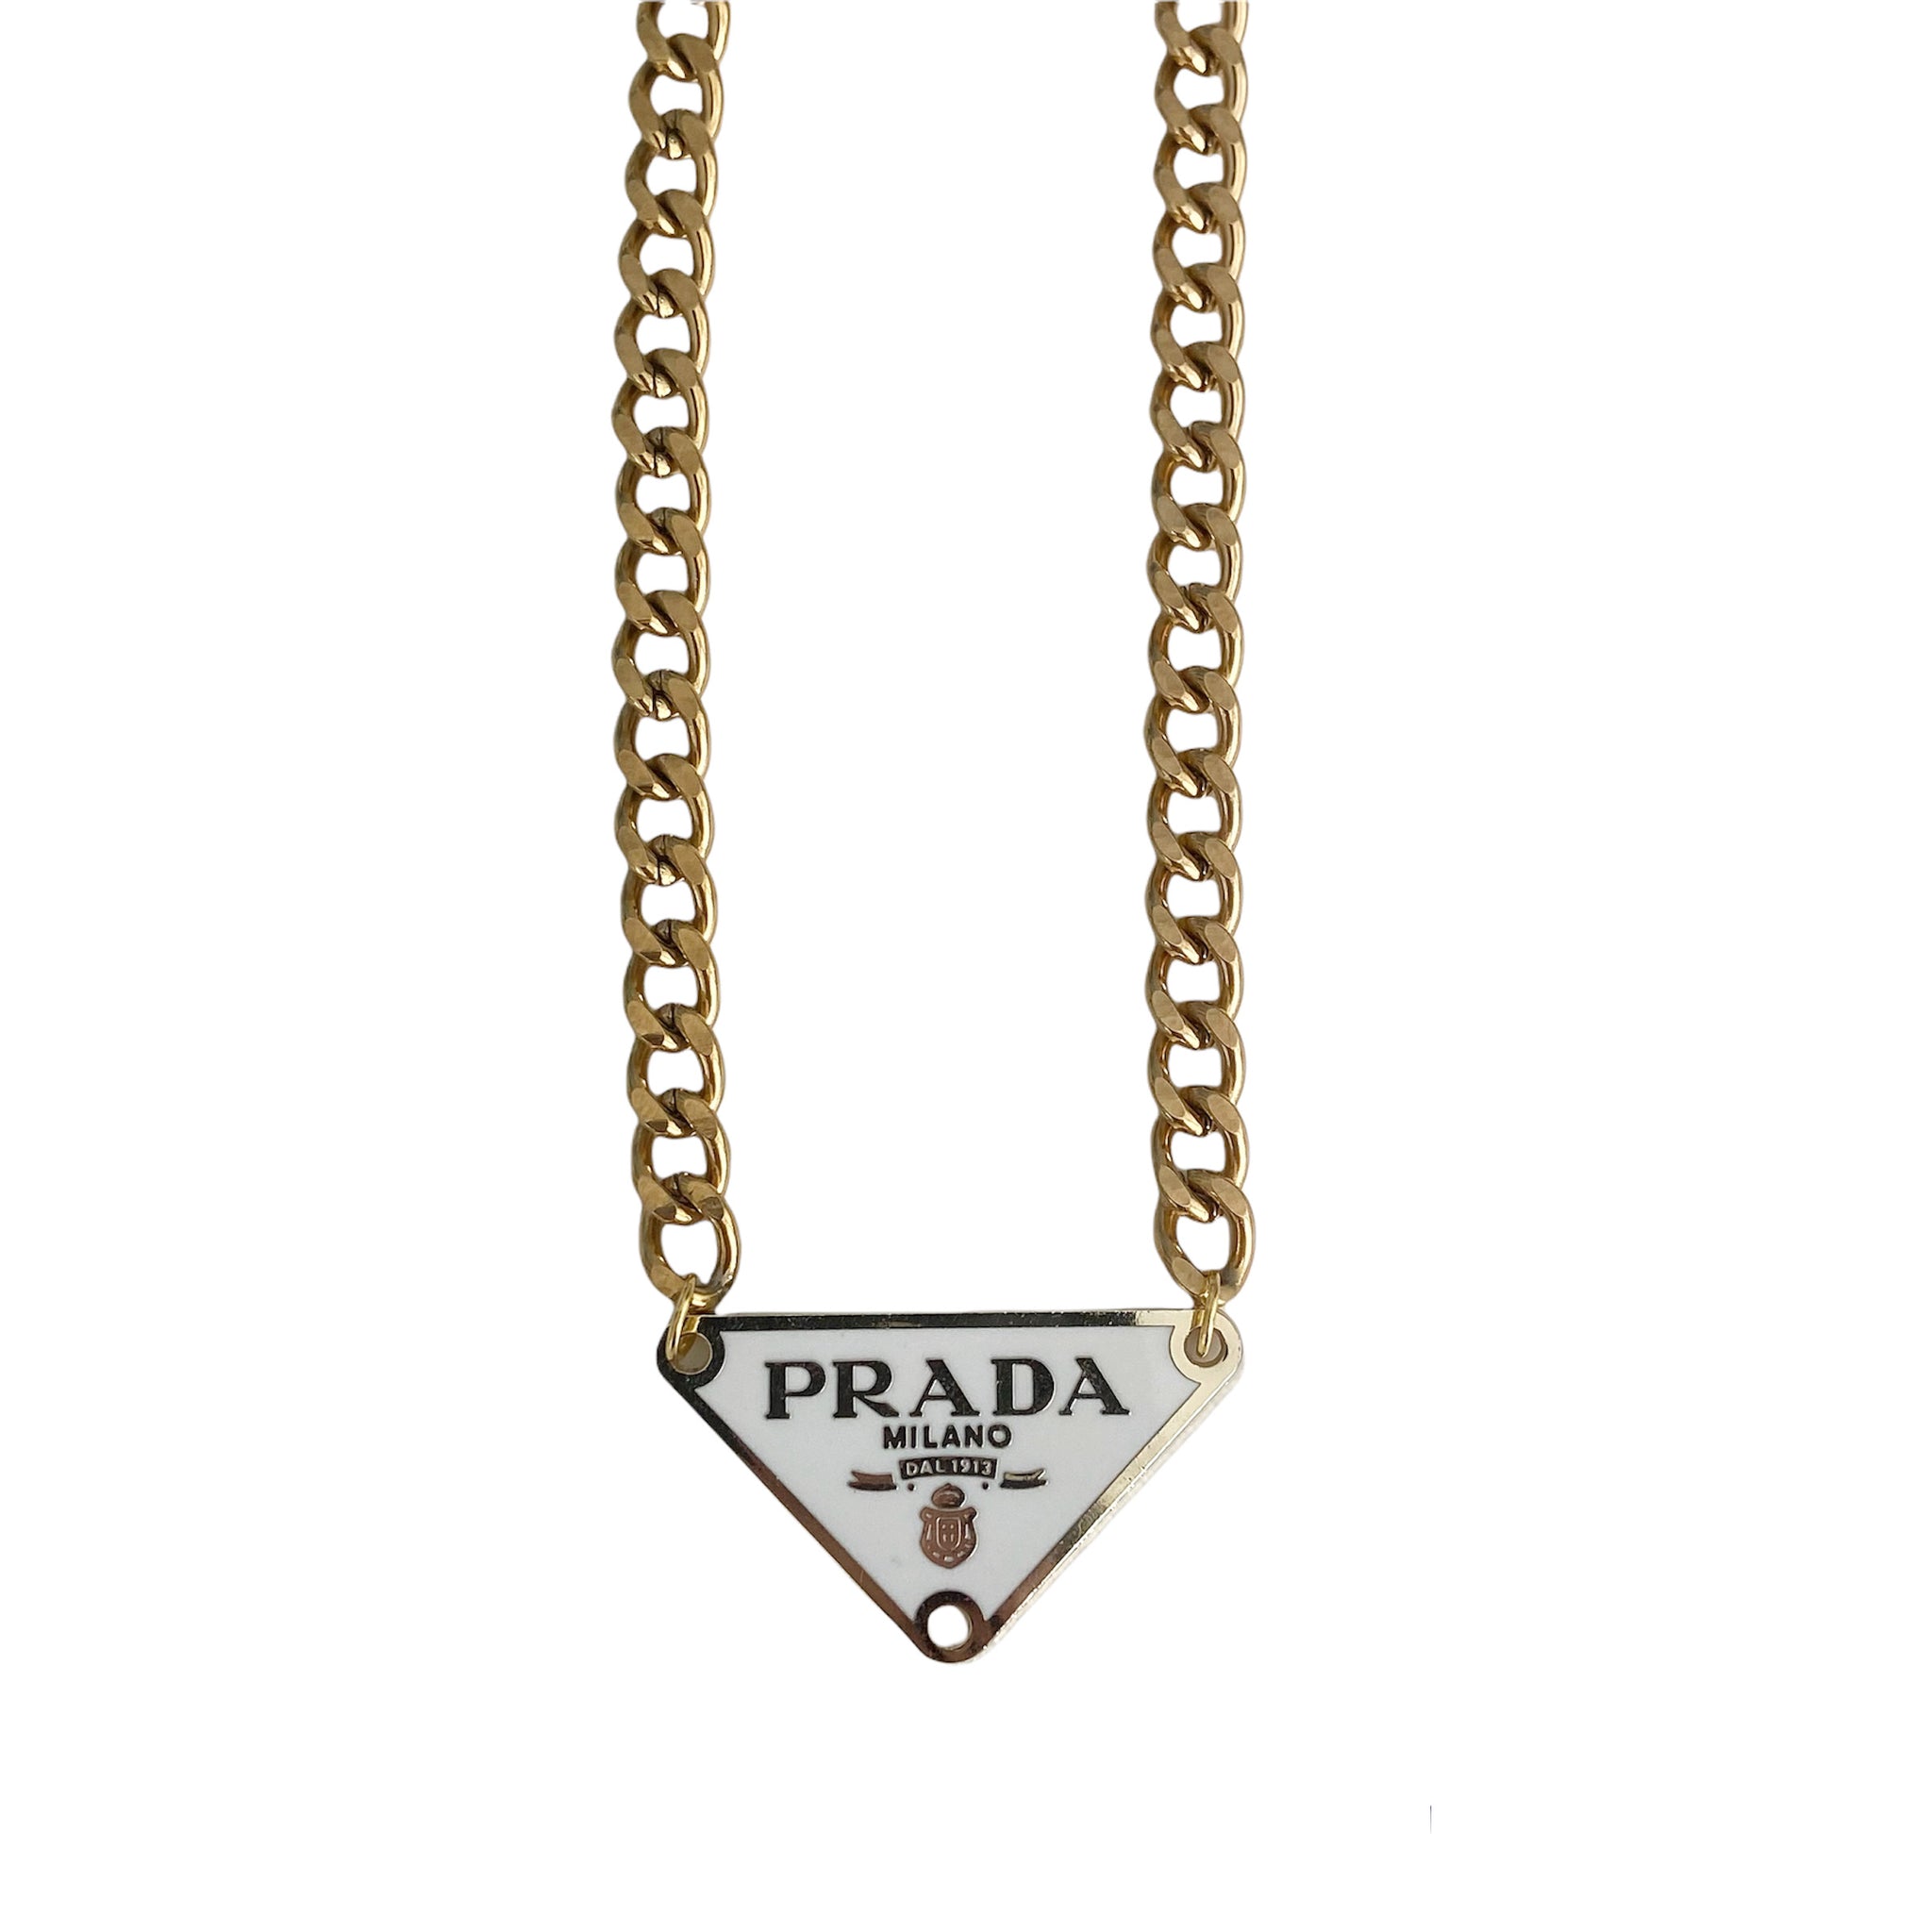 Rework Vintage Brown and Gold Prada Emblem on Necklace or Bracelet – Relic  the Label